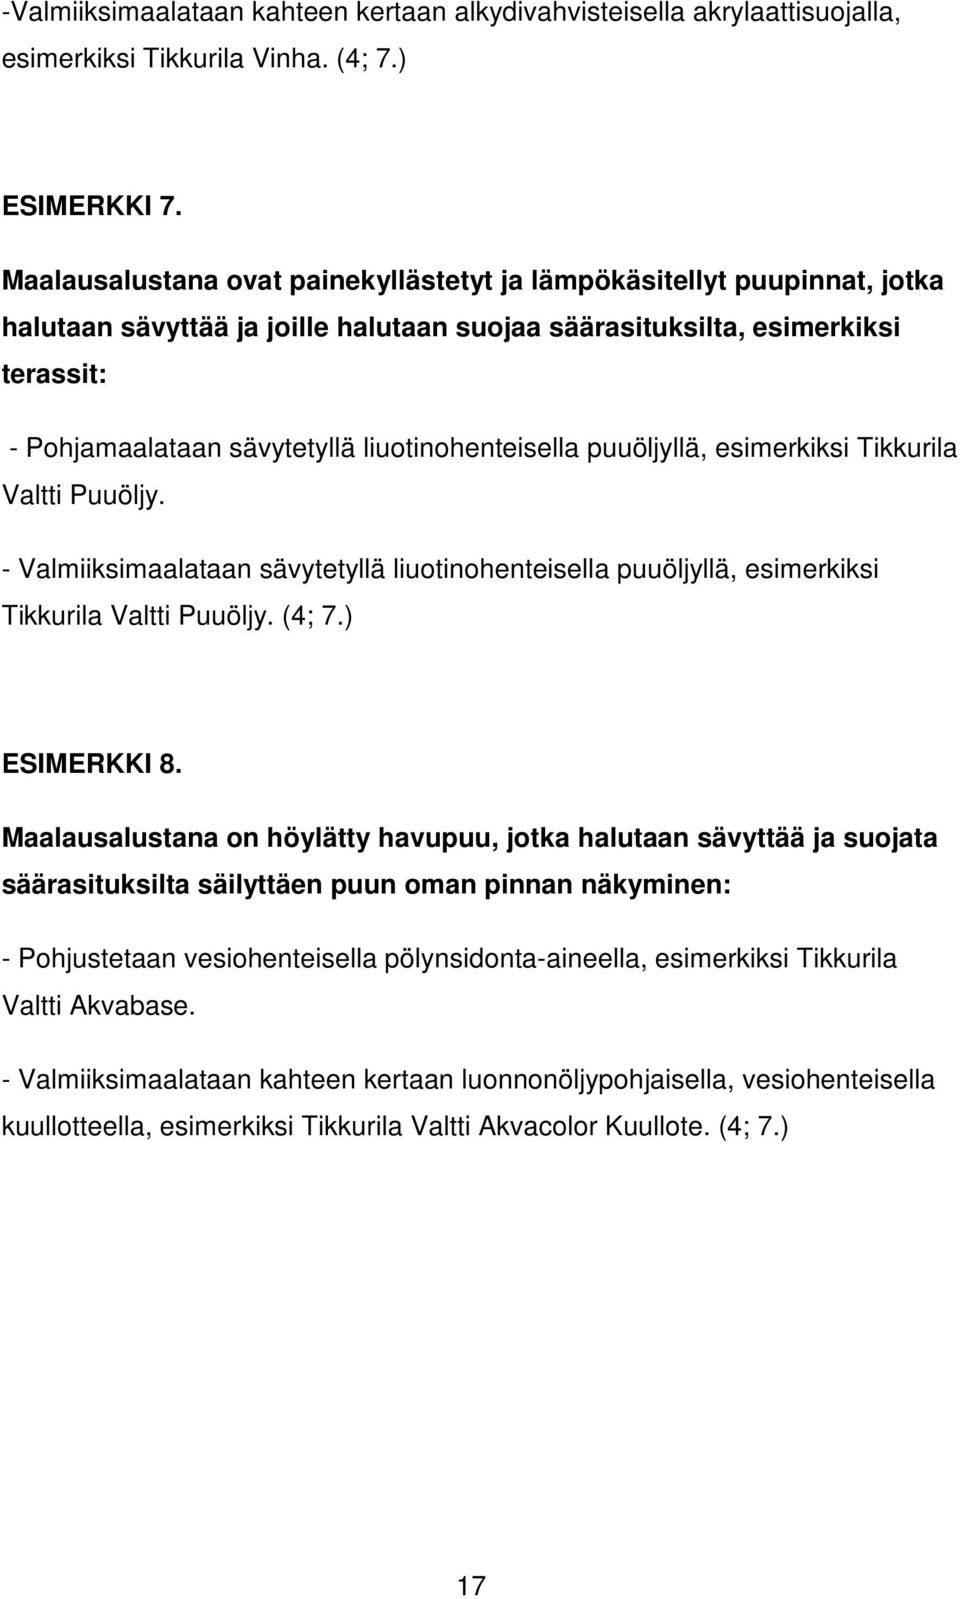 liuotinohenteisella puuöljyllä, esimerkiksi Tikkurila Valtti Puuöljy. - Valmiiksimaalataan sävytetyllä liuotinohenteisella puuöljyllä, esimerkiksi Tikkurila Valtti Puuöljy. (4; 7.) ESIMERKKI 8.